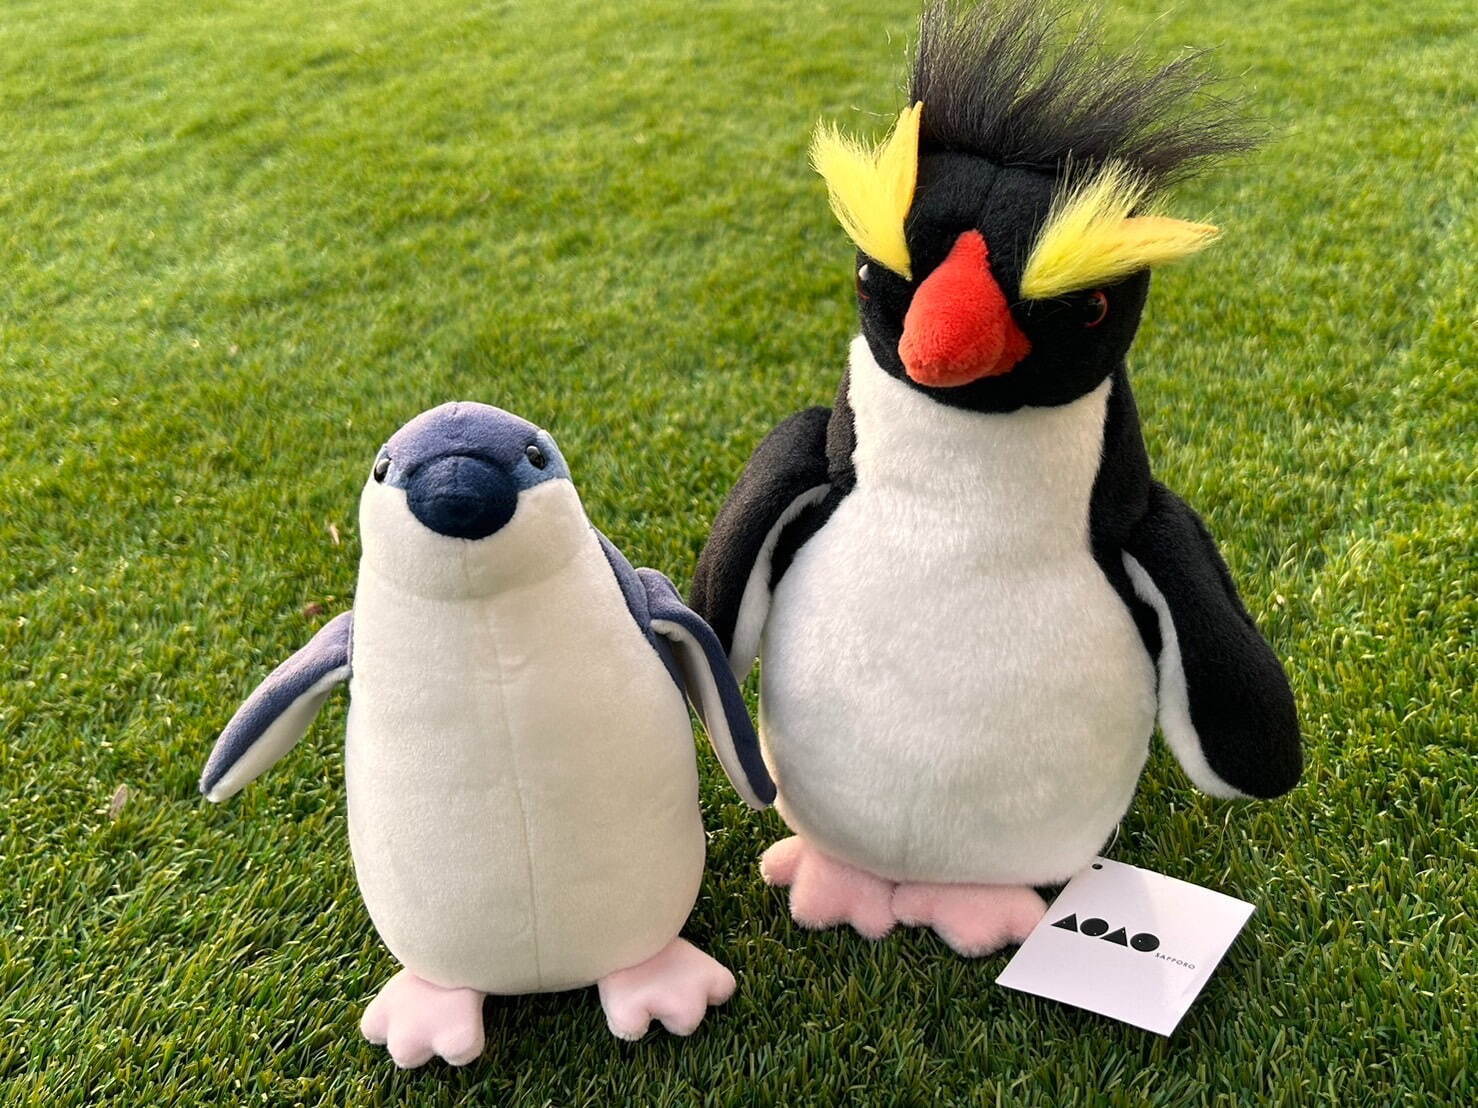 「フェアリーペンギン」 2,480円
「キタイワトビペンギン」2,480円